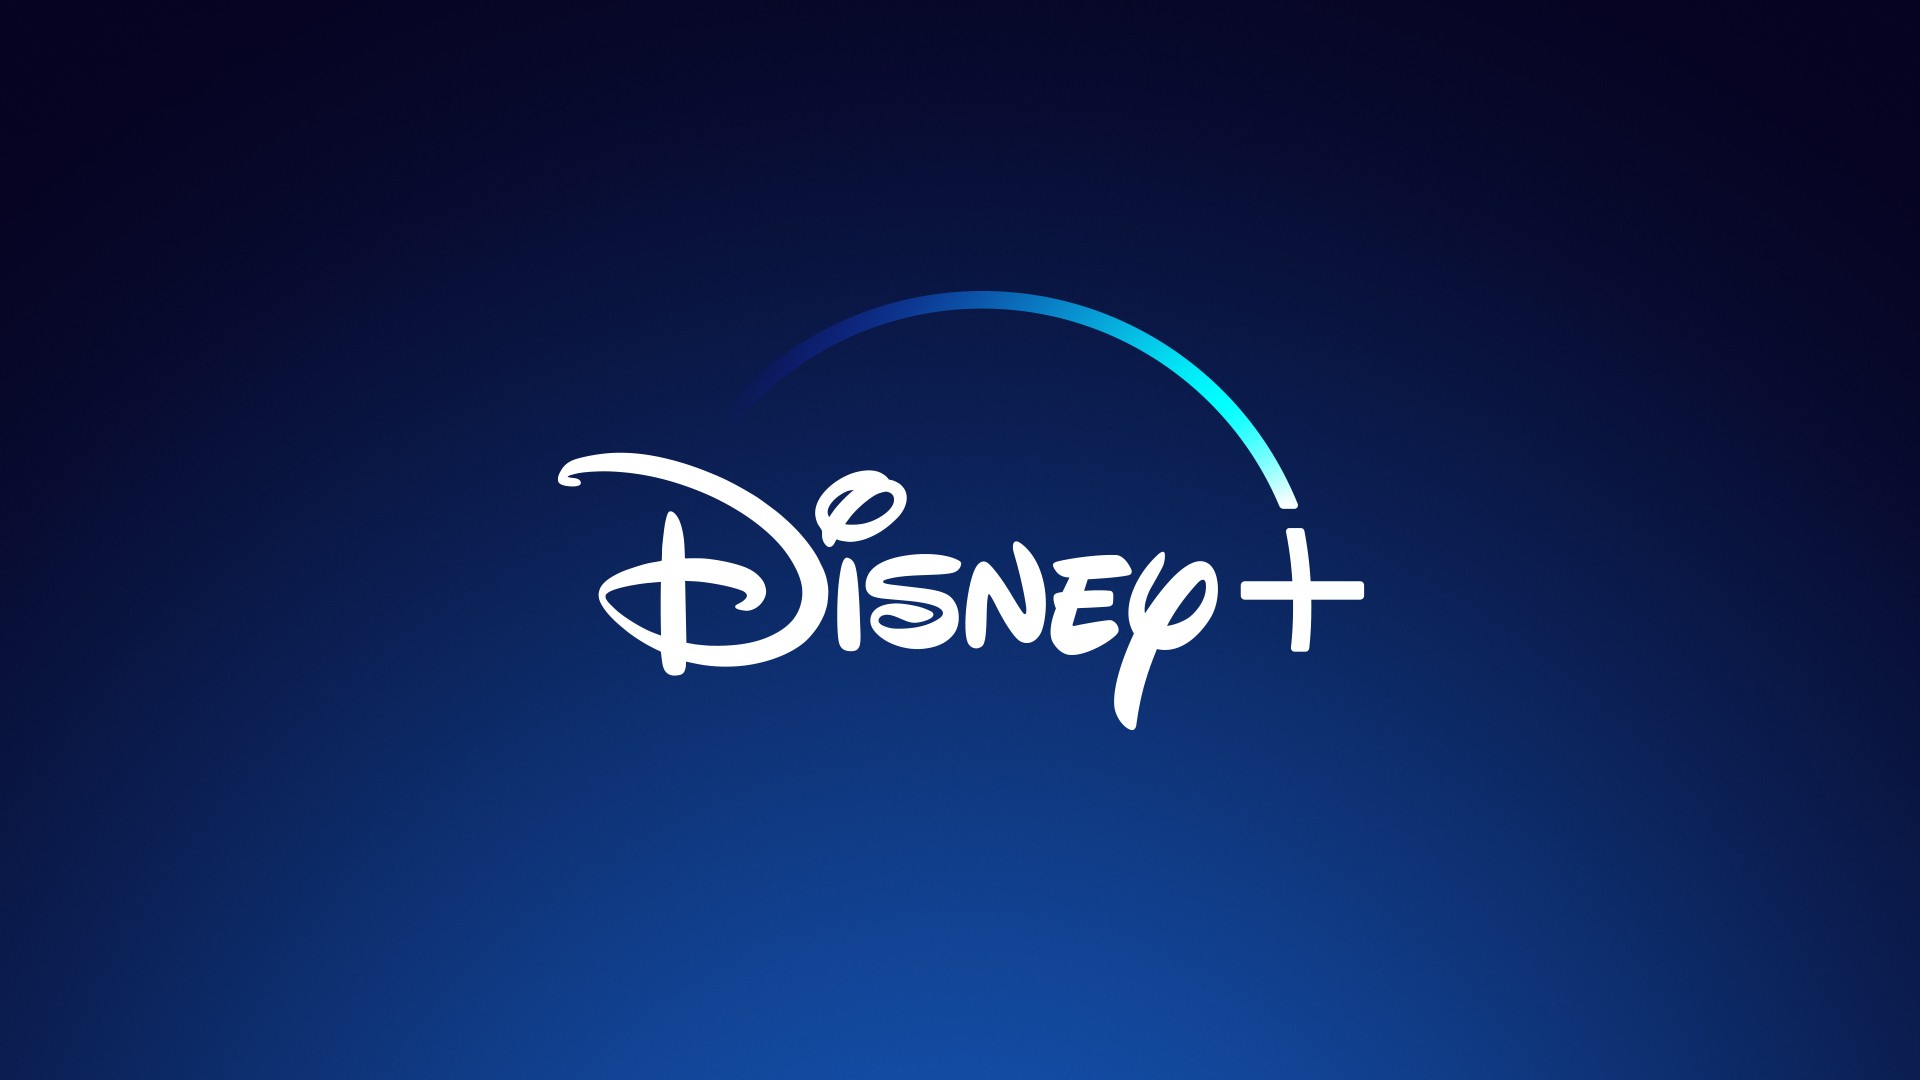 Disney+ chega a 86 milhões de assinantes